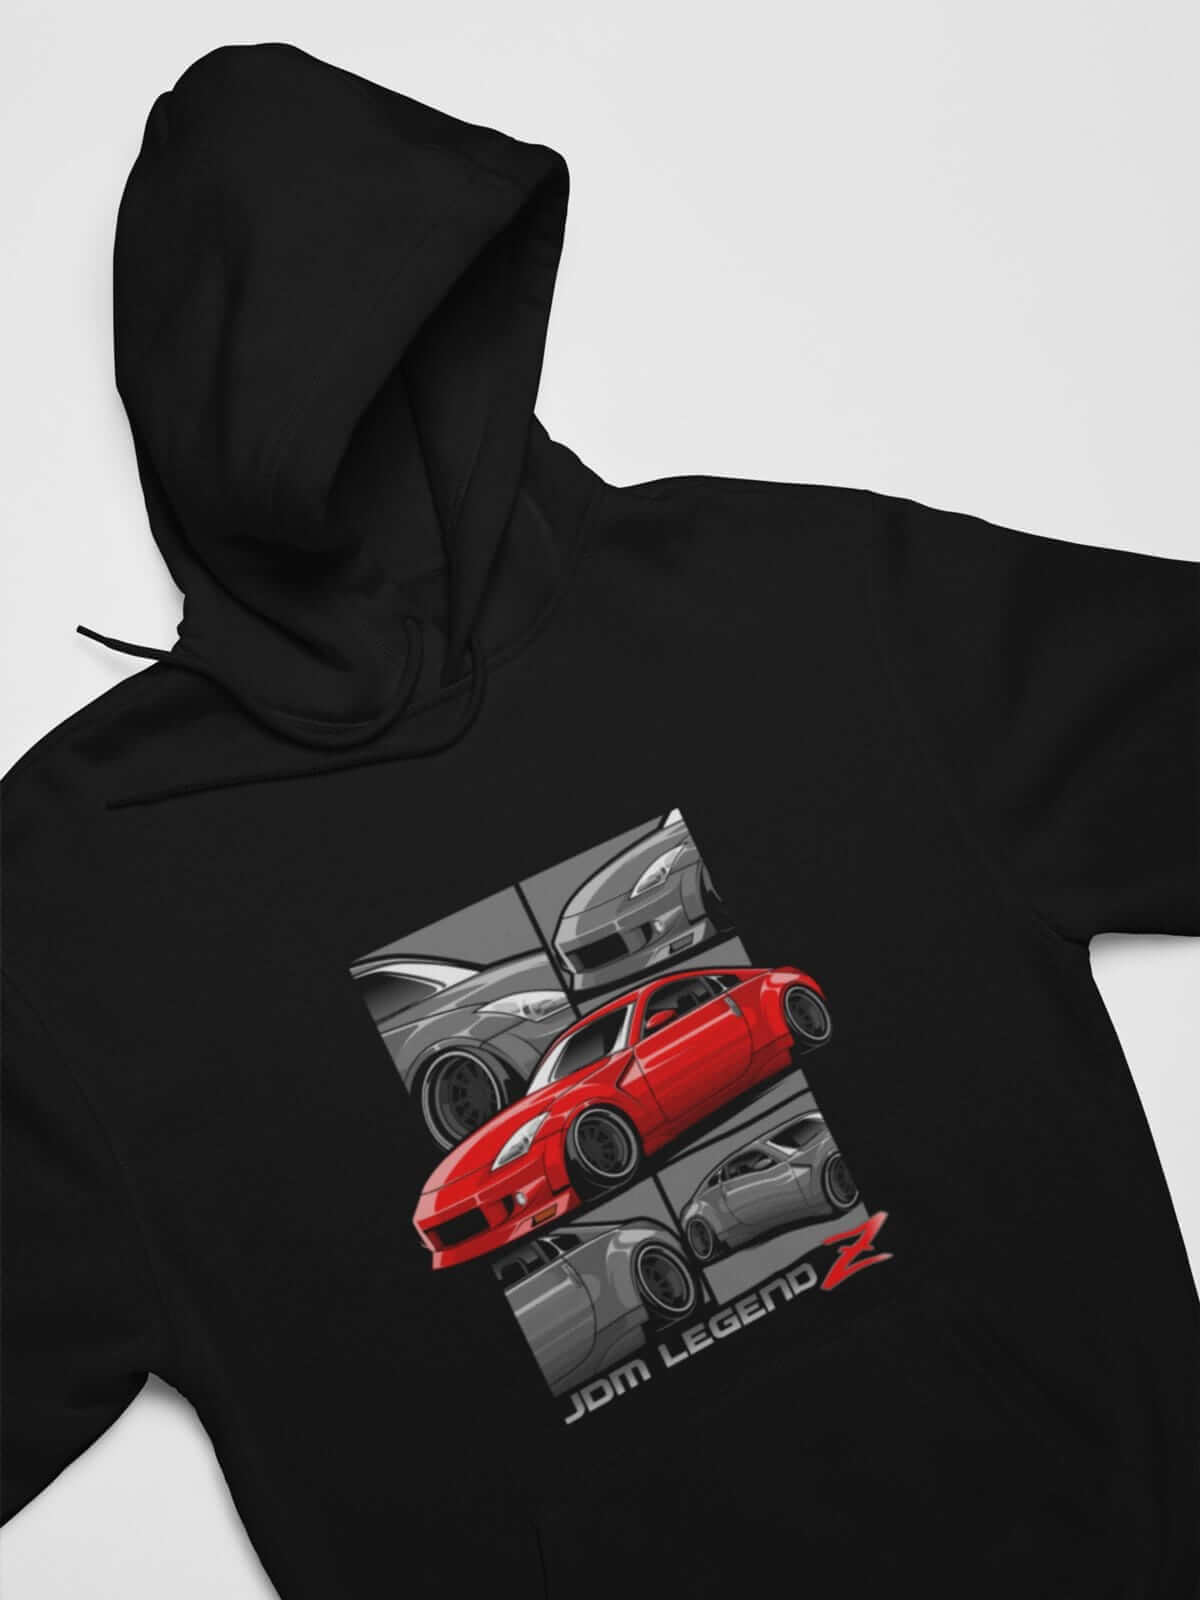 Red Japanese sports car printed on black car hoodie, JDM sweatshirt, car guy gift, car lover, car fan, car enthusiast, petrolhead, JDM lover, boyfriend gift idea